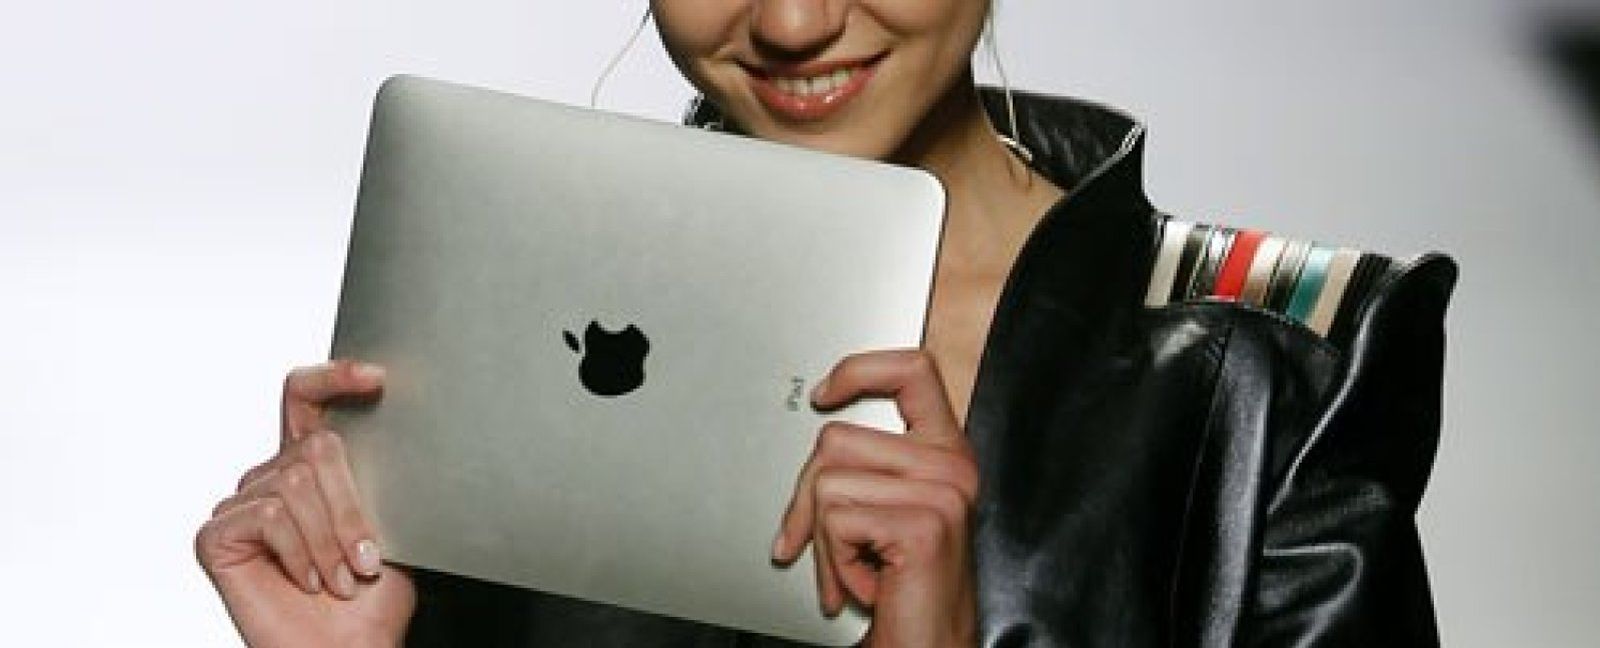 Foto: Apple lanzará un nuevo iPad en febrero